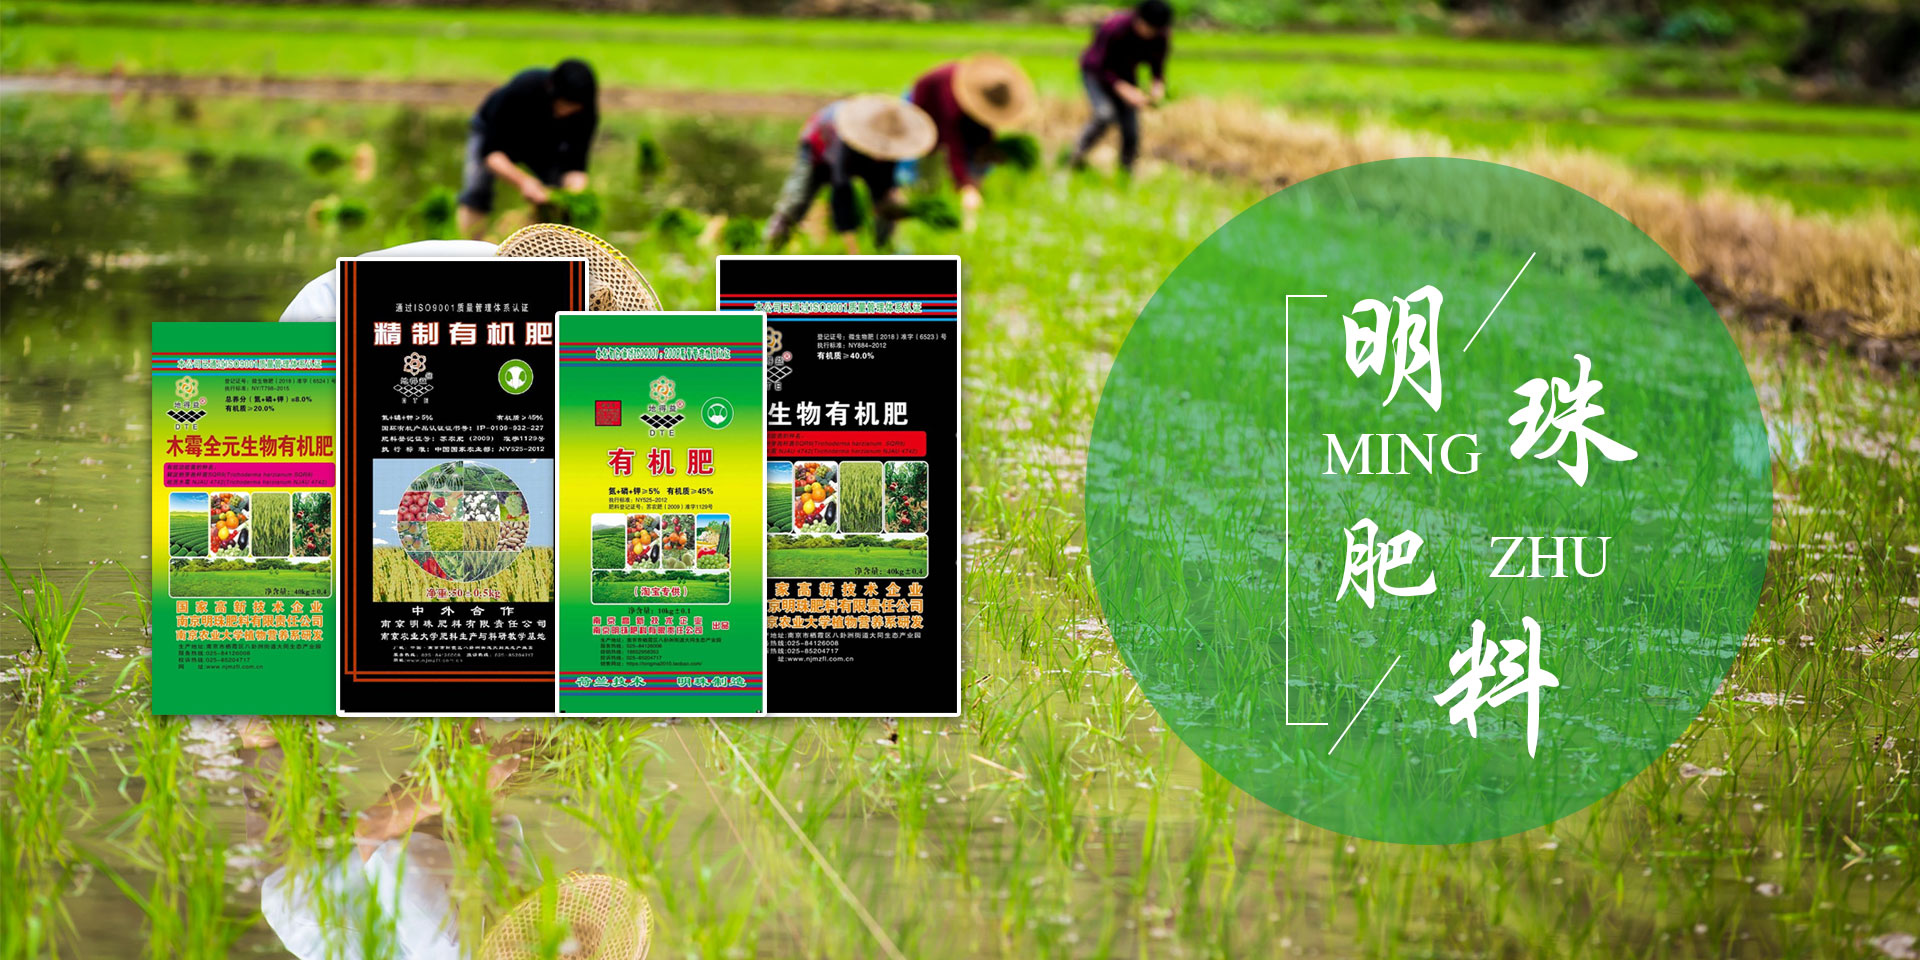 南京明珠肥料有限责任公司